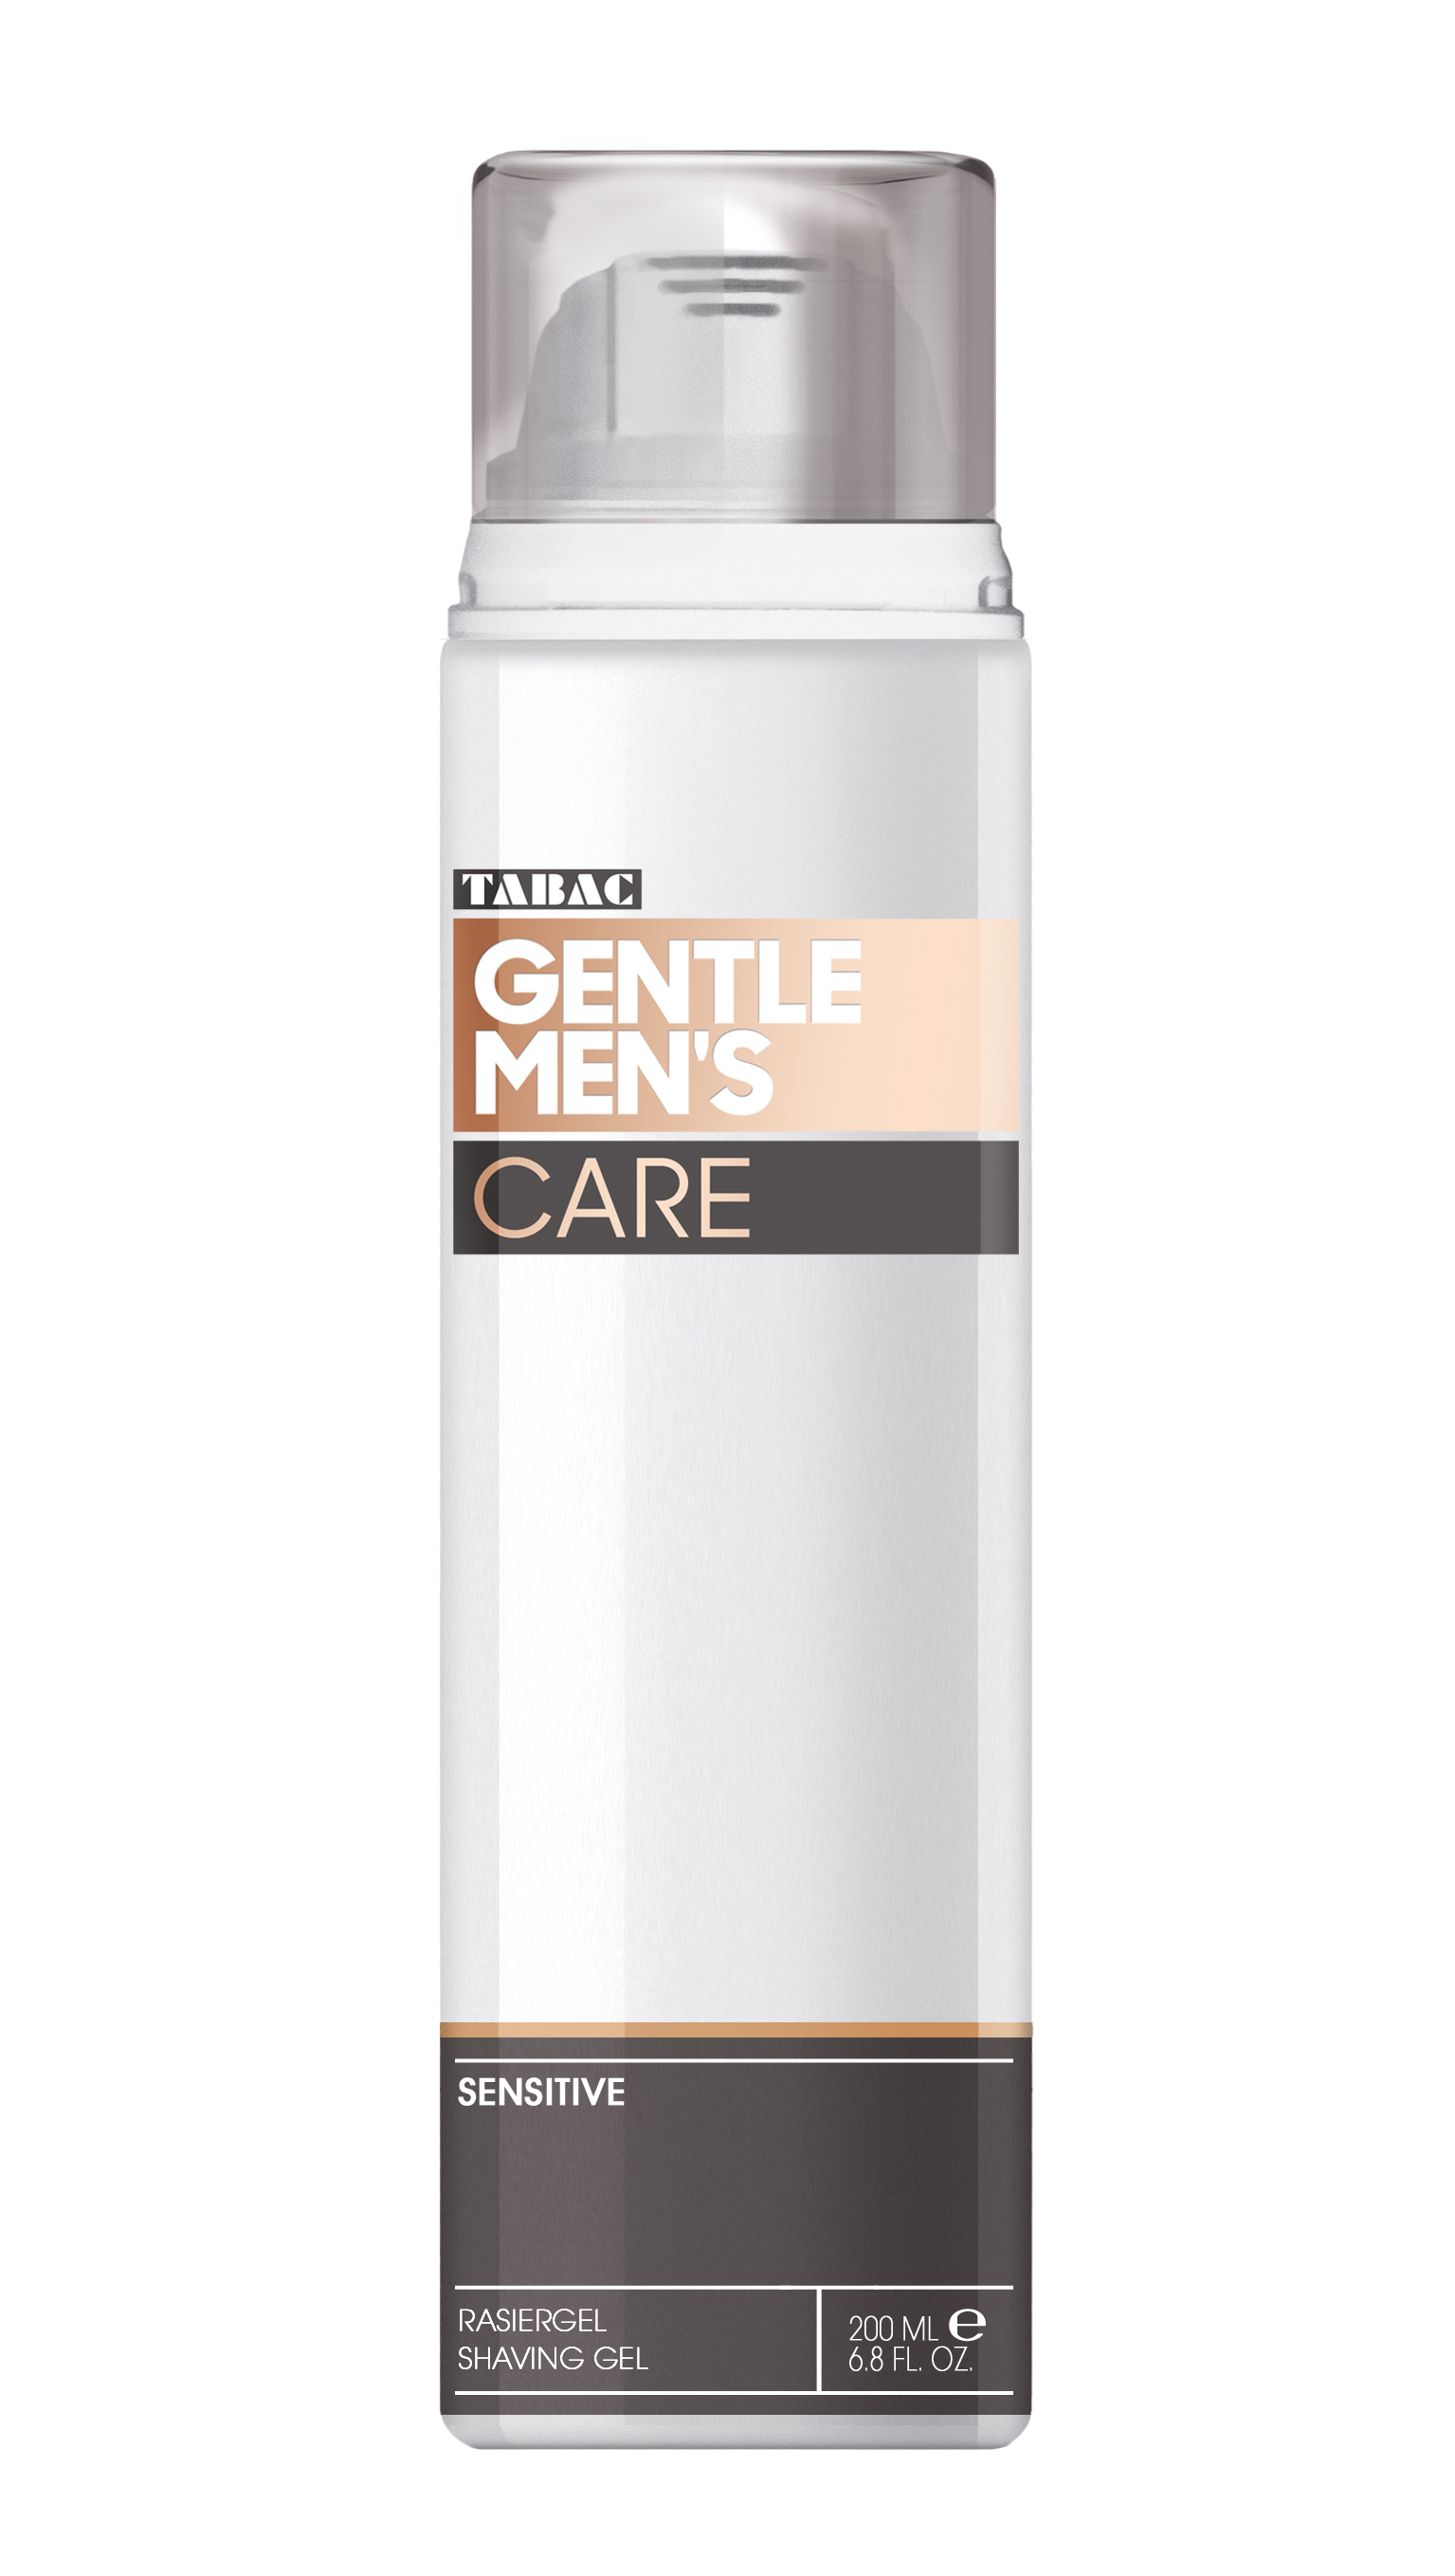    <br />  <br />Az ápolt férfinak<br />Tabac Gentle Men’s Care <br /><br />A Tabac Gentle Men’s Care termékcsalád dinamikus, friss és stílusos illa- tával hódít, mely alátámasztja az úriember ápolt megjelenését. Az Eau de Toilette illata finoman megjelenik a testápoló termékekben is. Egy Kímélő borotválkozó gél mely optimális borotválkozási eredményt garantál. Az Aloe Vera-t tartalmazó készítmény védő filmréteggel vonja be a bőrt, mely óv a mikrosérülésektől. 0 % alkohol*.<br /><br />